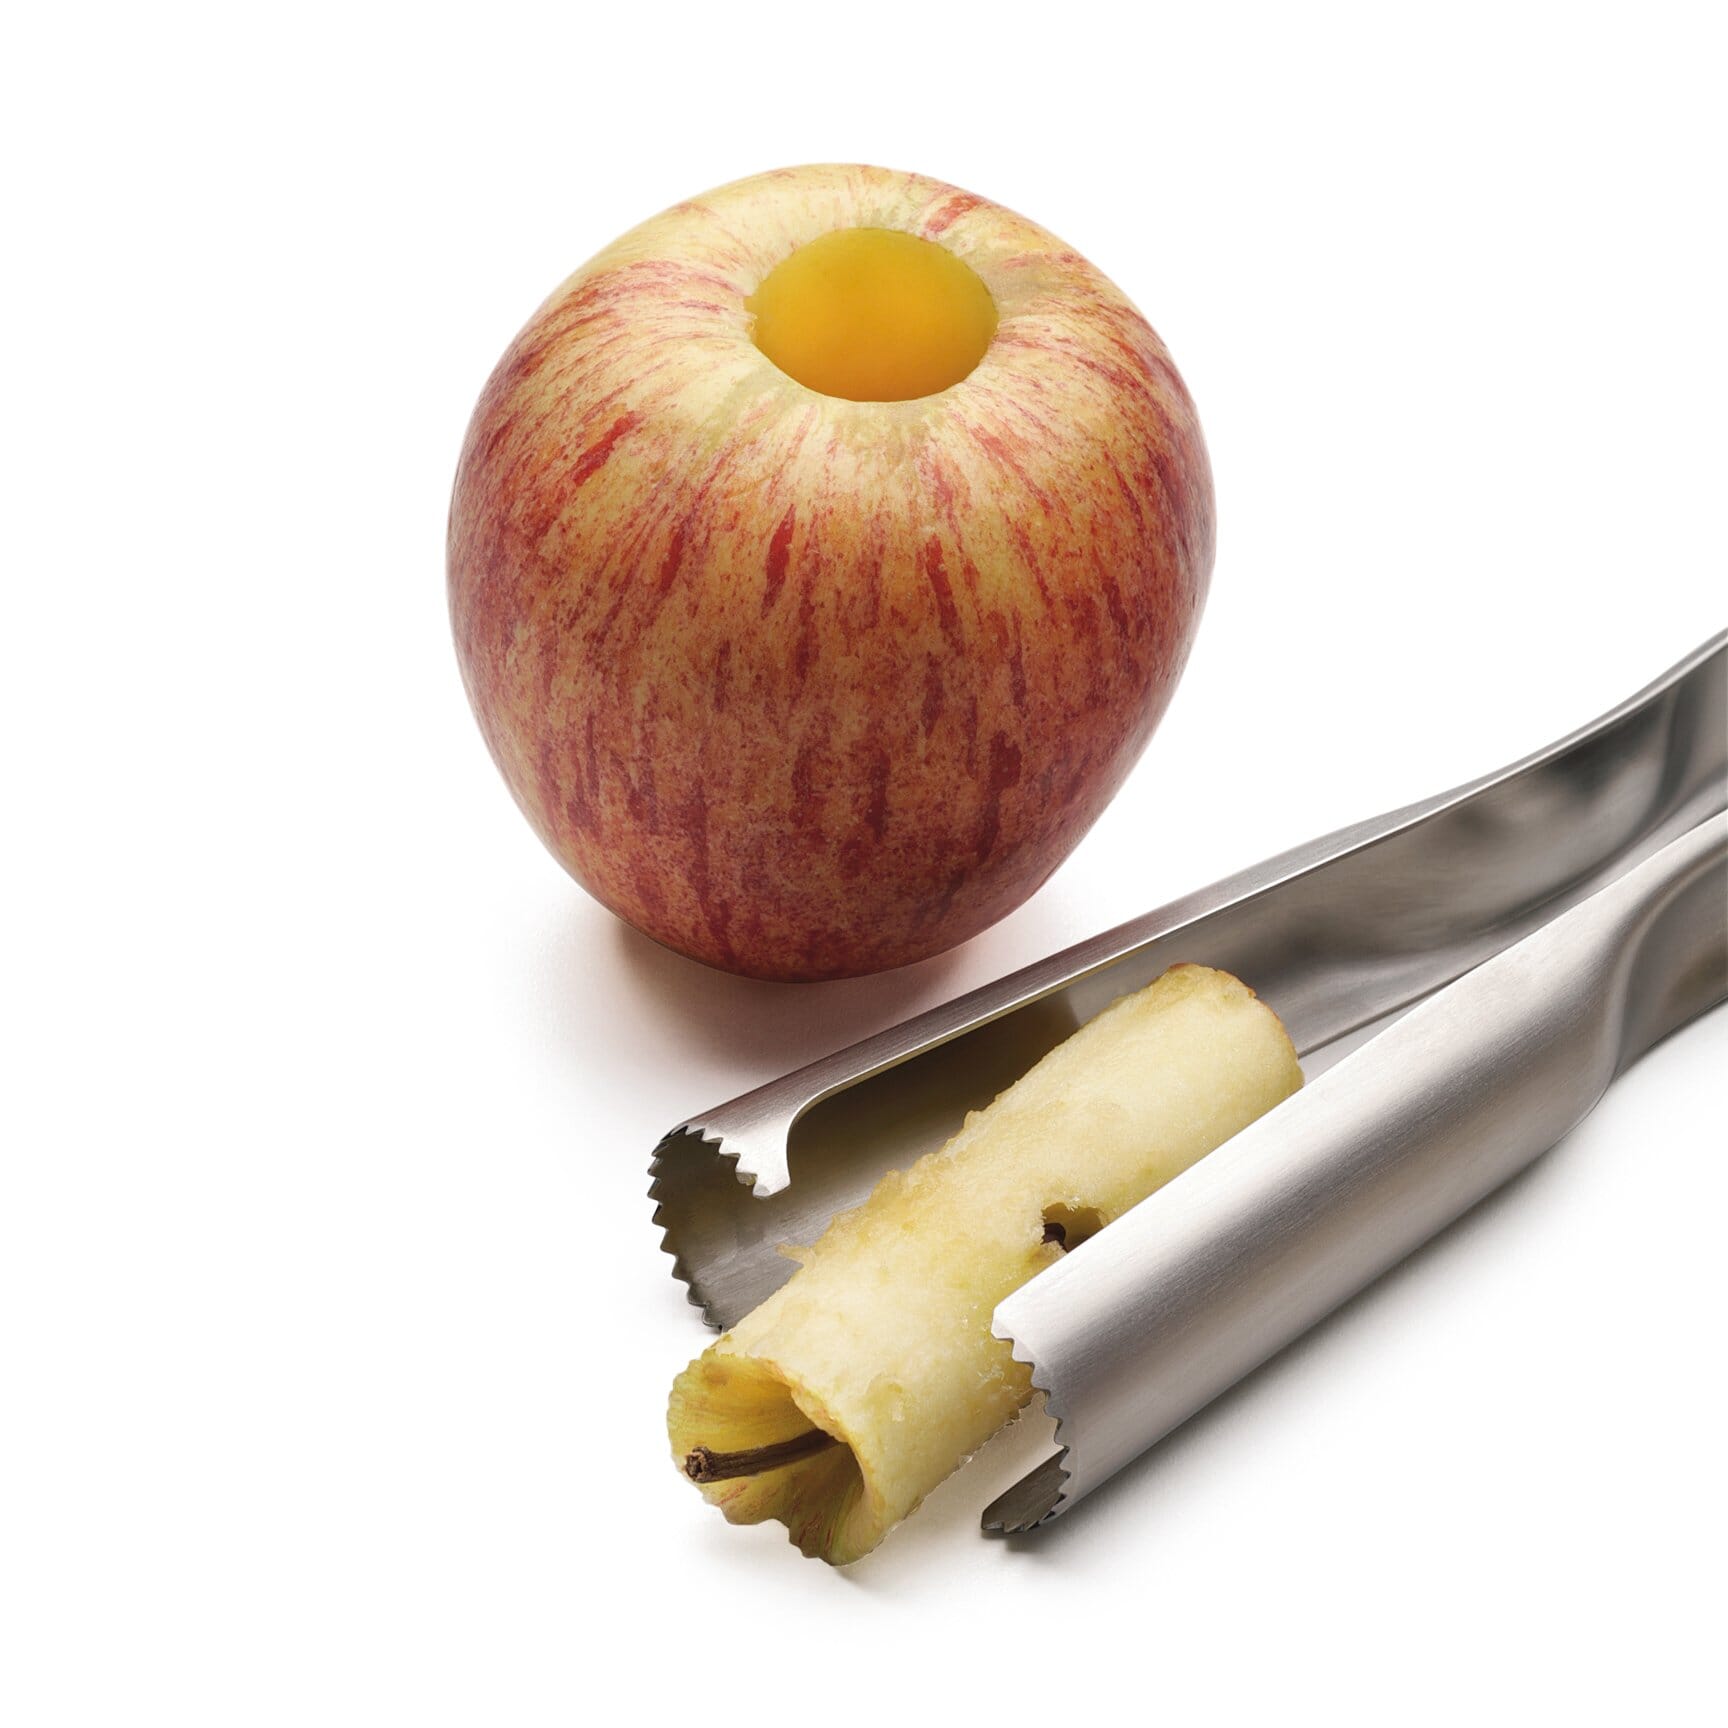 Katyma Apfelentkerner Edelstahl Apfelausstecher Apple Entkerner Entferner Küchenhelfer mit Ergonomischer Griff für Obst und Gemüse 